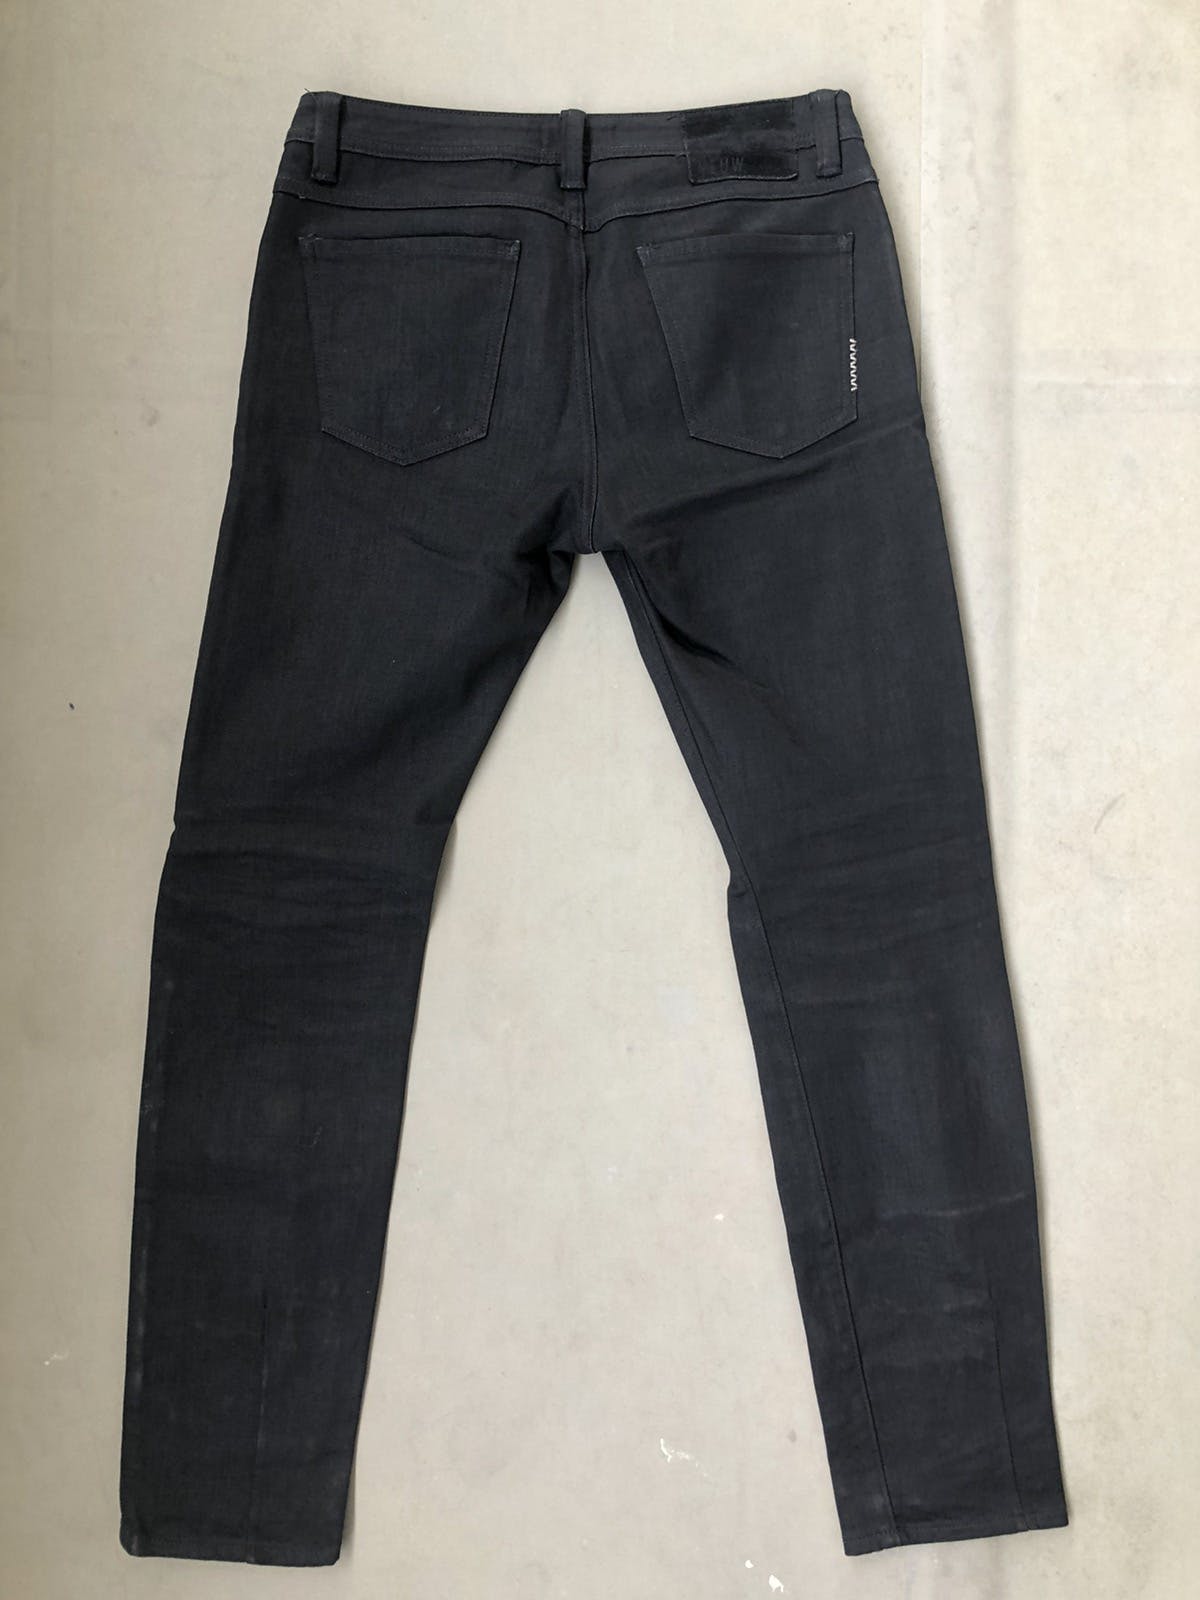 Neuw denim Iggy skinny black jeans - 2